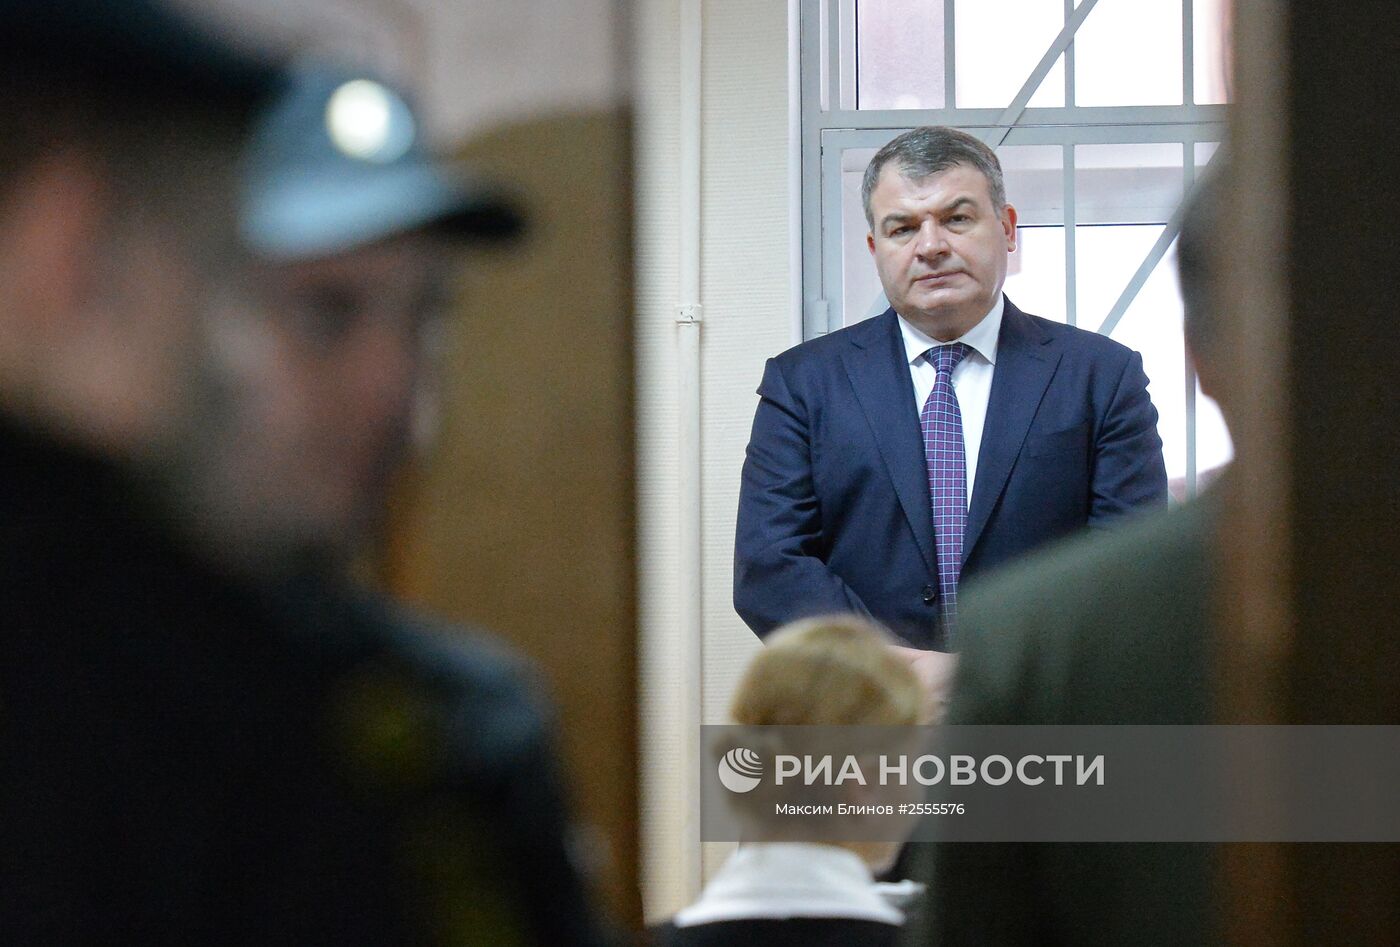 А.Сердюков вызван свидетелем в суд по делу "Оборонсервиса"